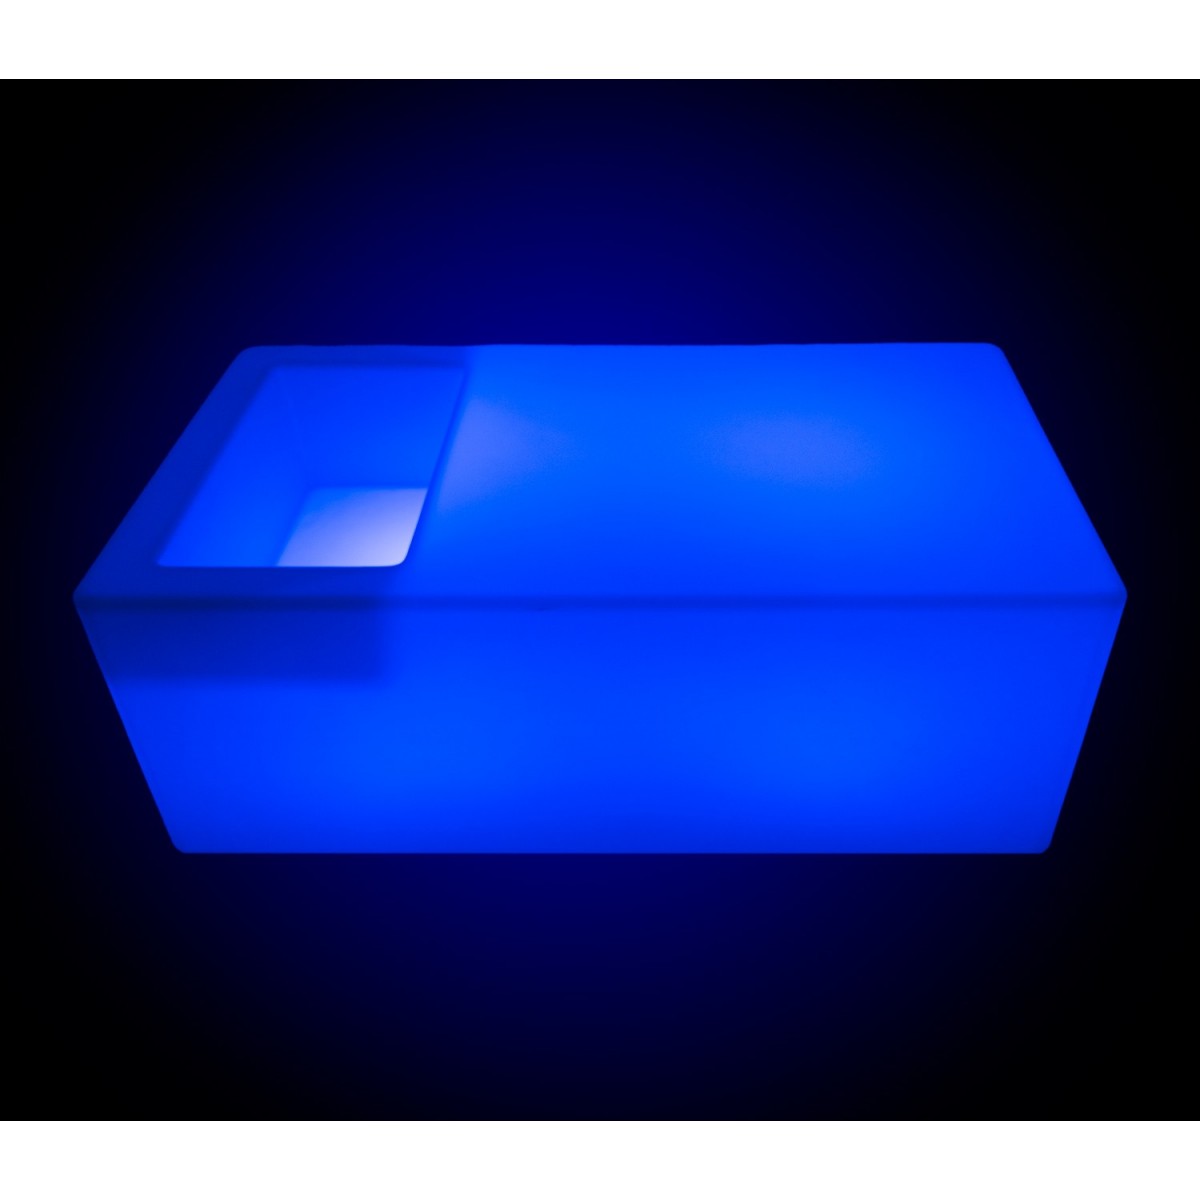 Akku RGB LED-Tisch mit Eisbehälter - 24W - IP67 - Außeneinsatz